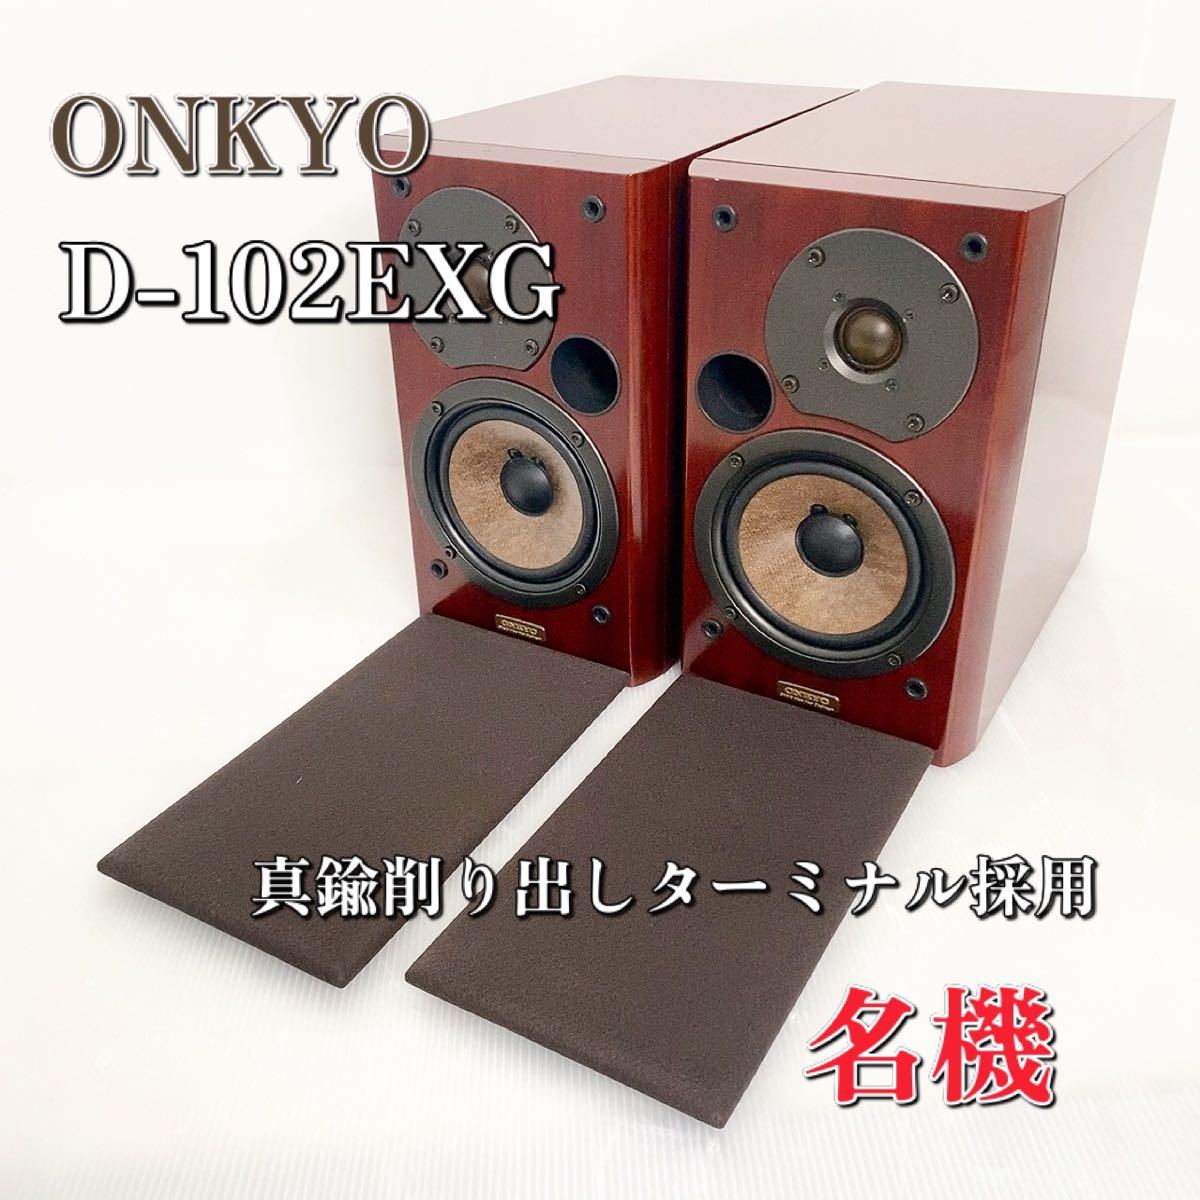 売れ筋】 【名機】ONKYO D-102EXG 廃盤 スピーカーシステム オンキョー